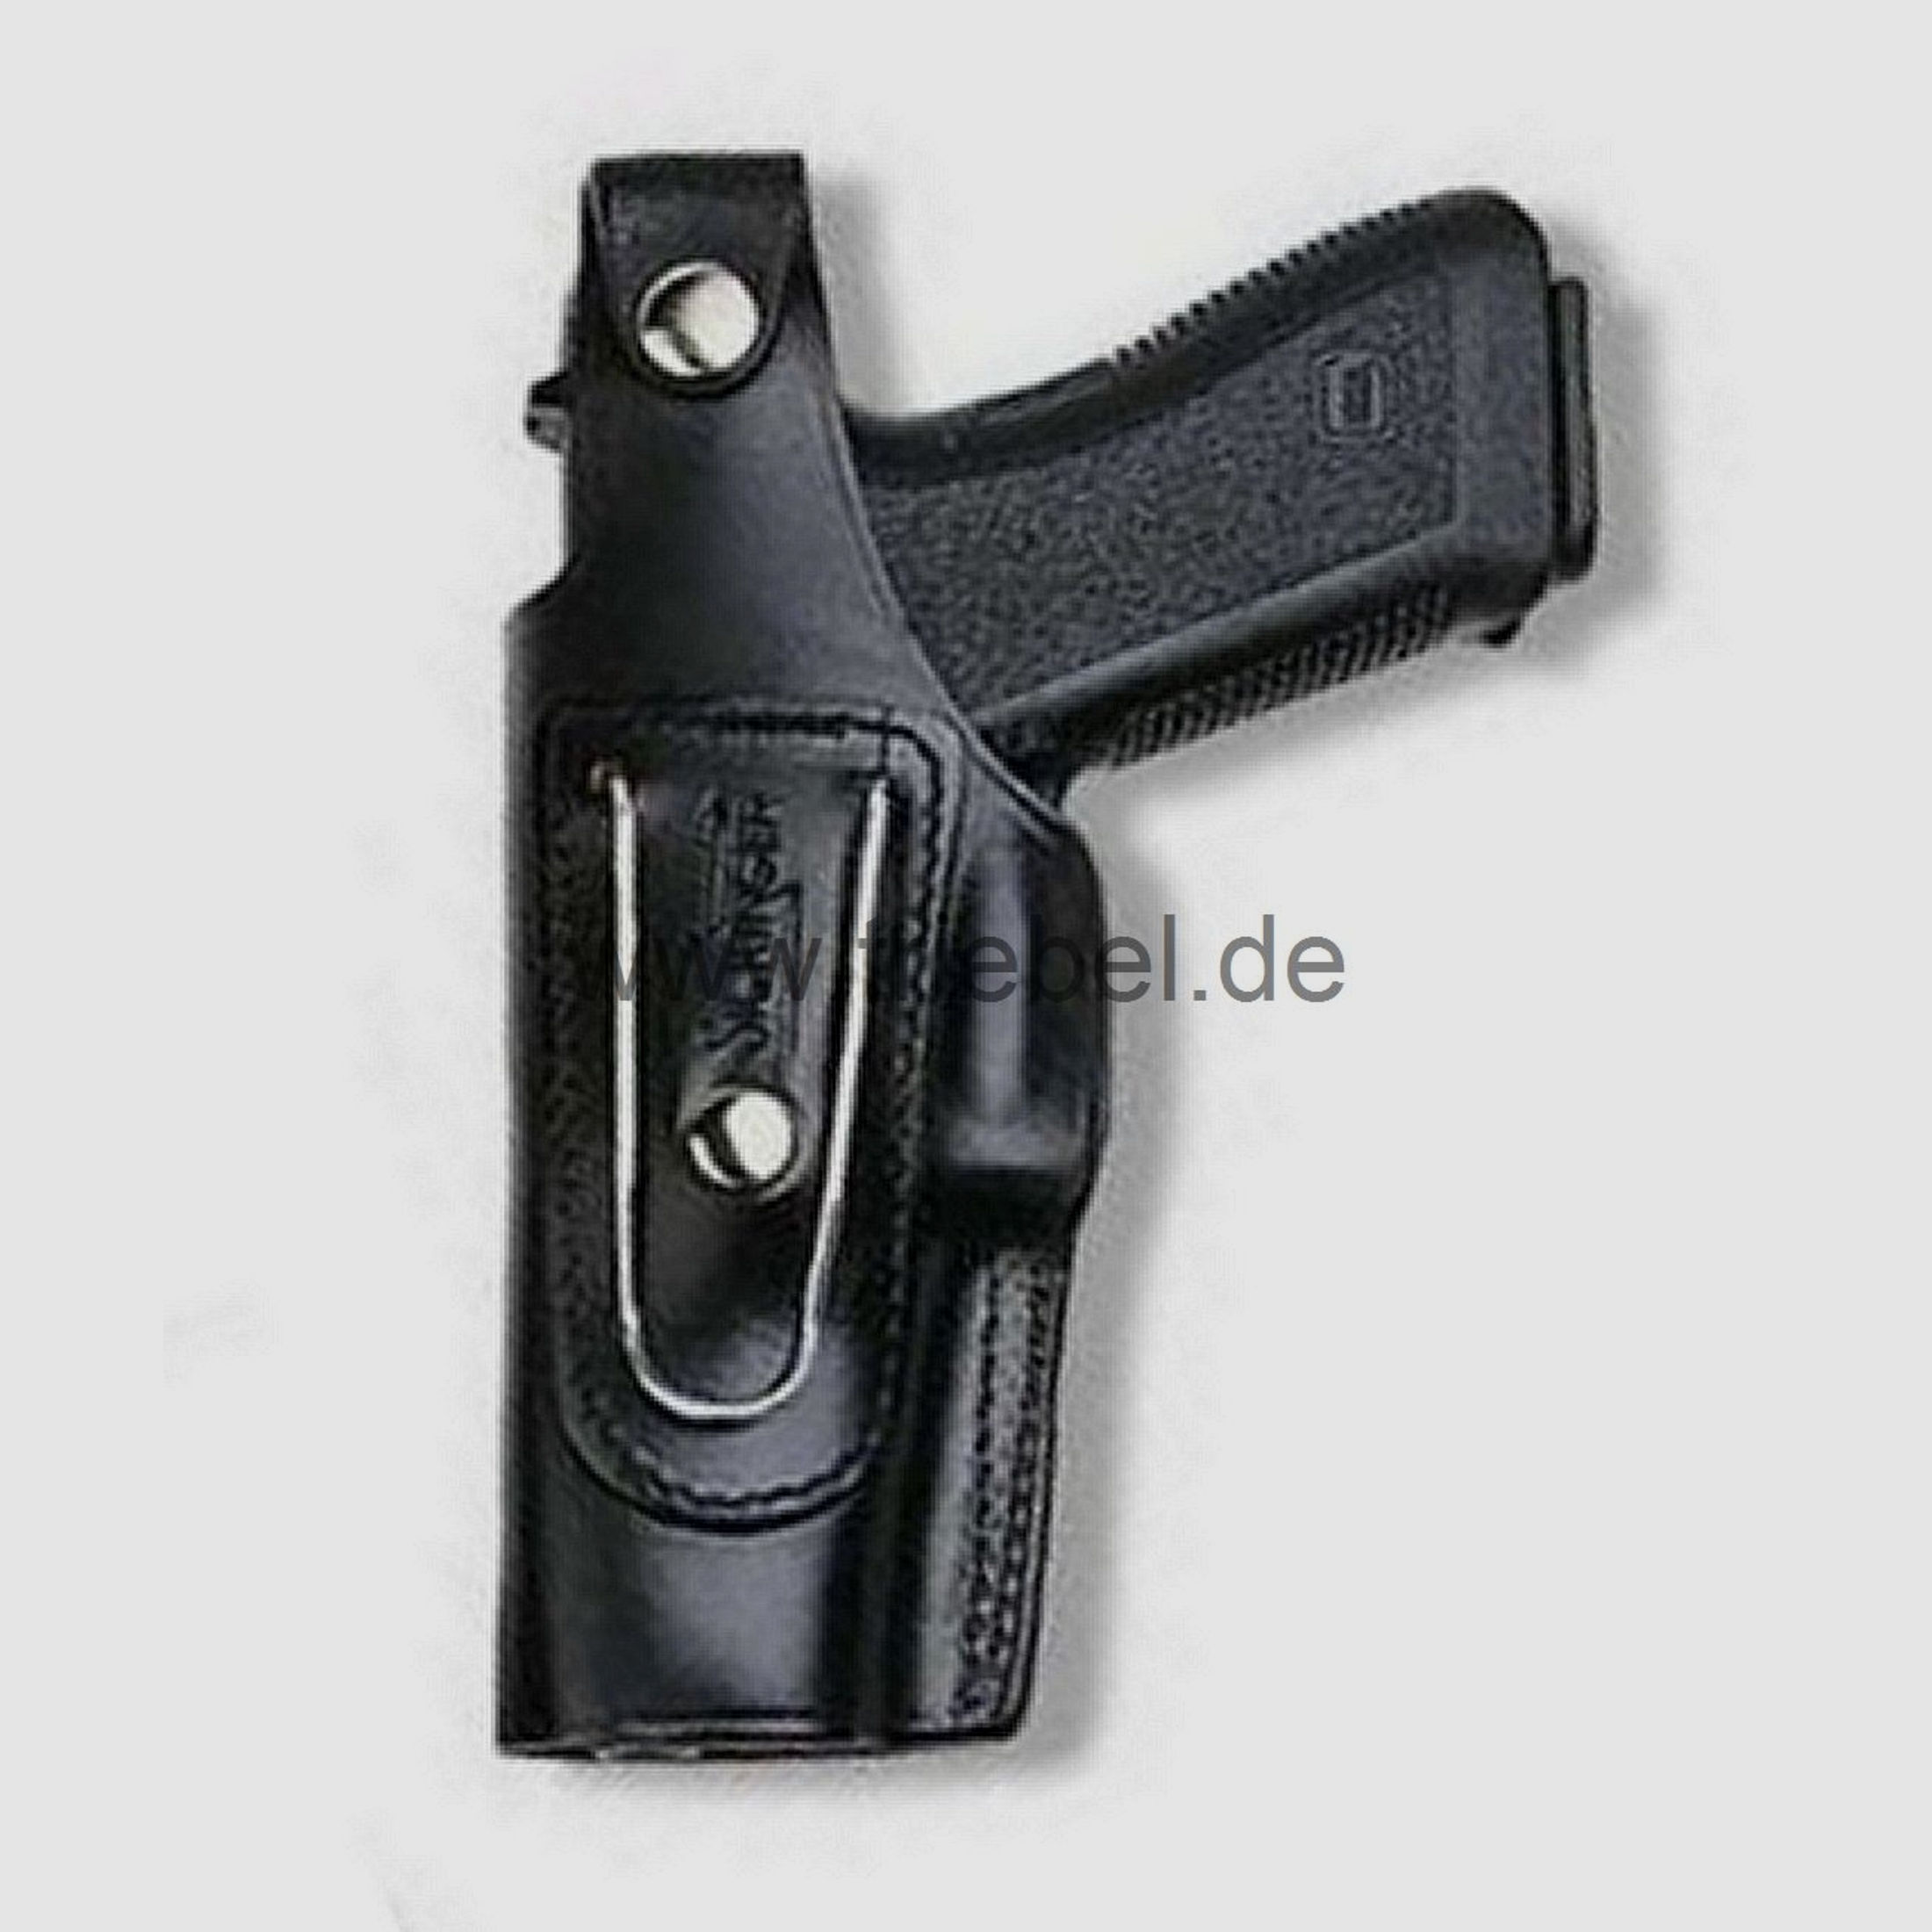 SICKINGER Holster (Leder) f. Glock 42 62315 -G-Man schwarz